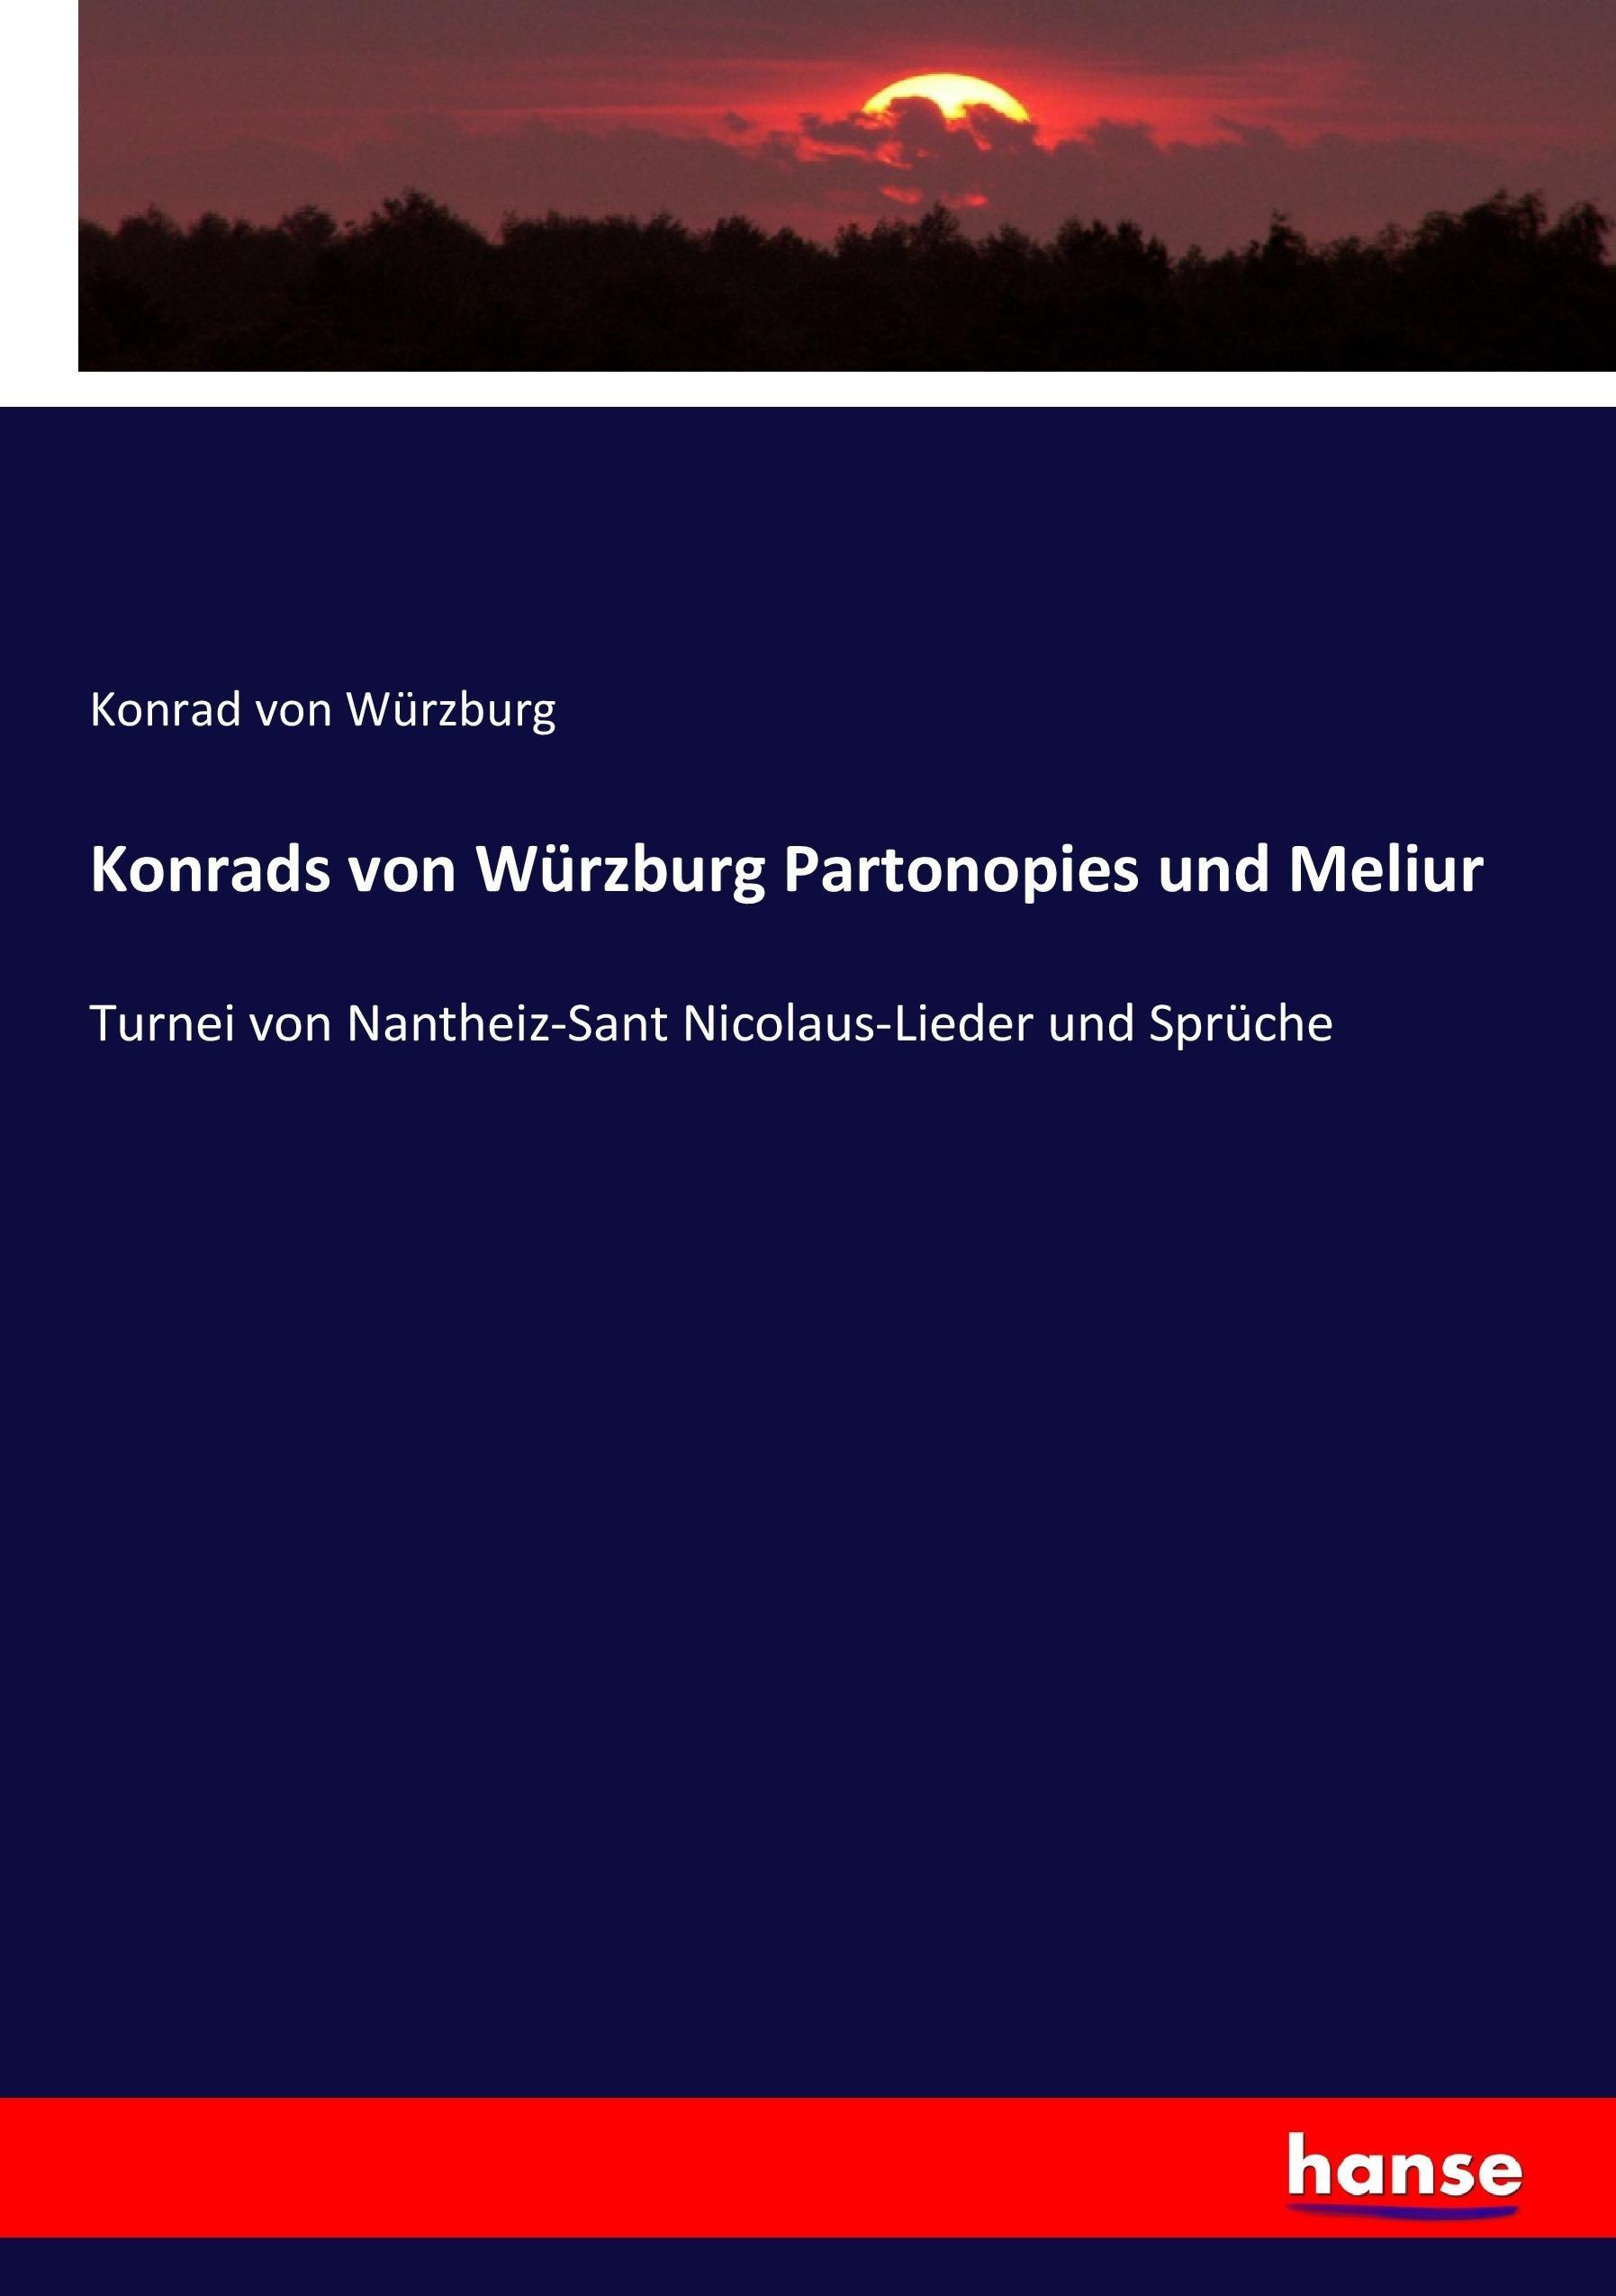 Konrads von Würzburg Partonopies und Meliur / Turnei von Nantheiz-Sant Nicolaus-Lieder und Sprüche / Konrad von Würzburg / Taschenbuch / Paperback / 456 S. / Deutsch / 2017 / hansebooks - Würzburg, Konrad von